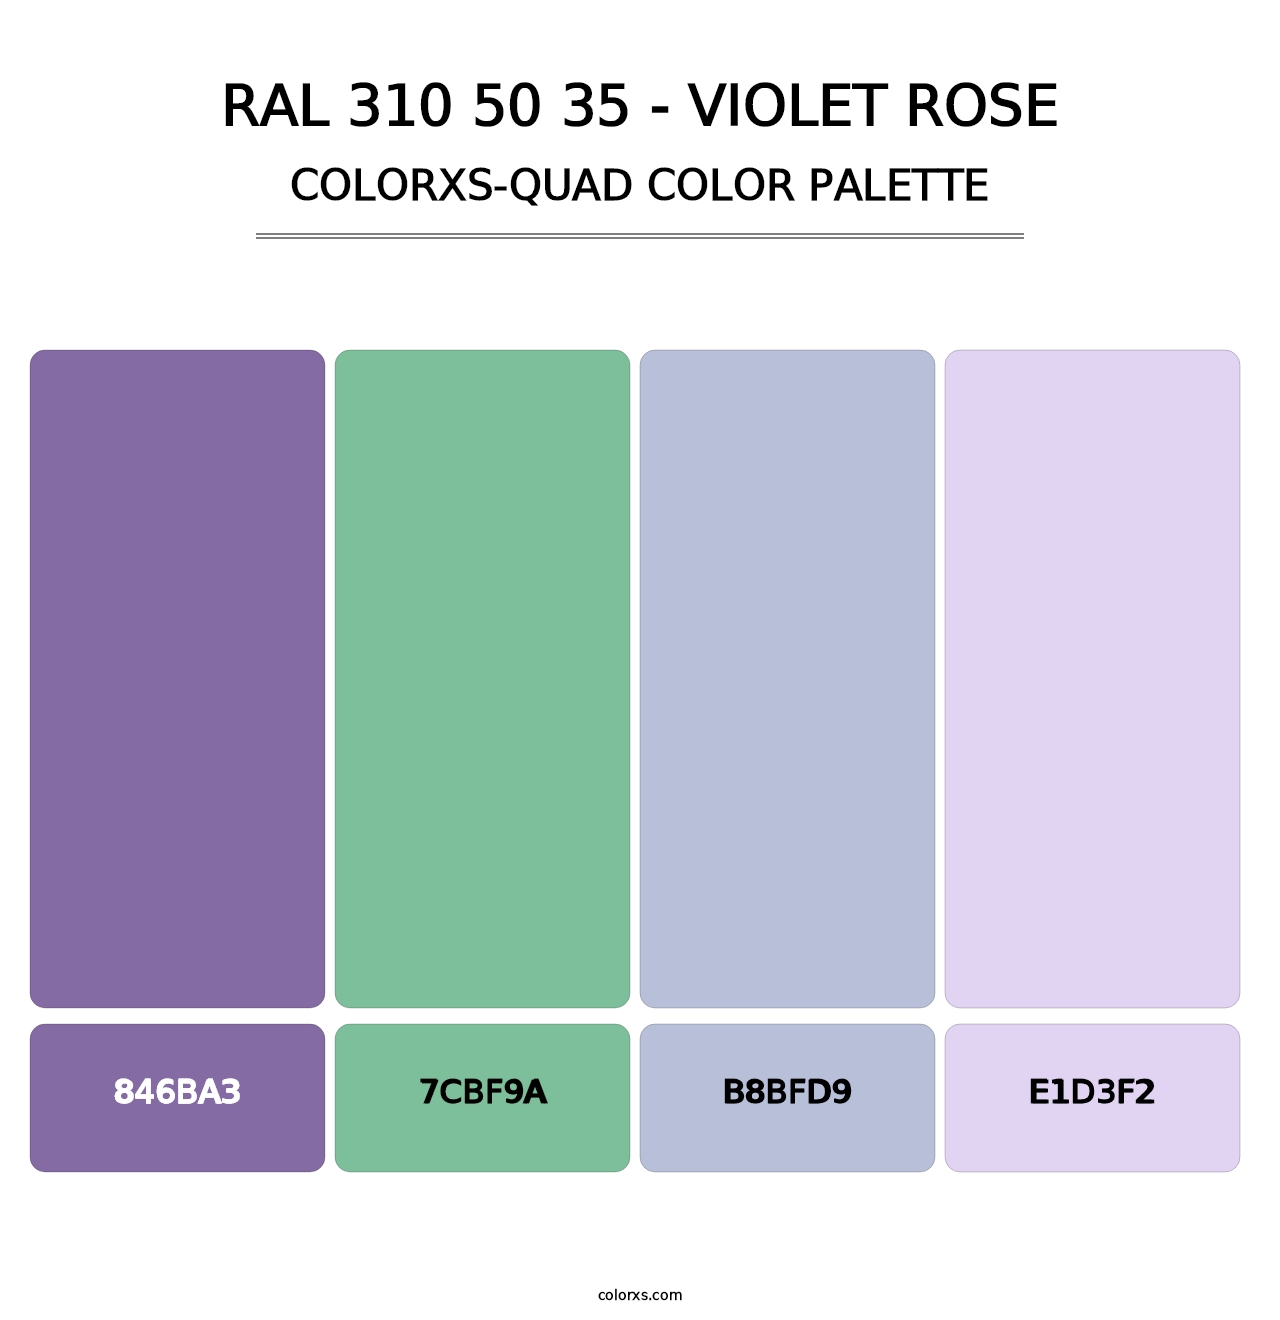 RAL 310 50 35 - Violet Rose - Colorxs Quad Palette